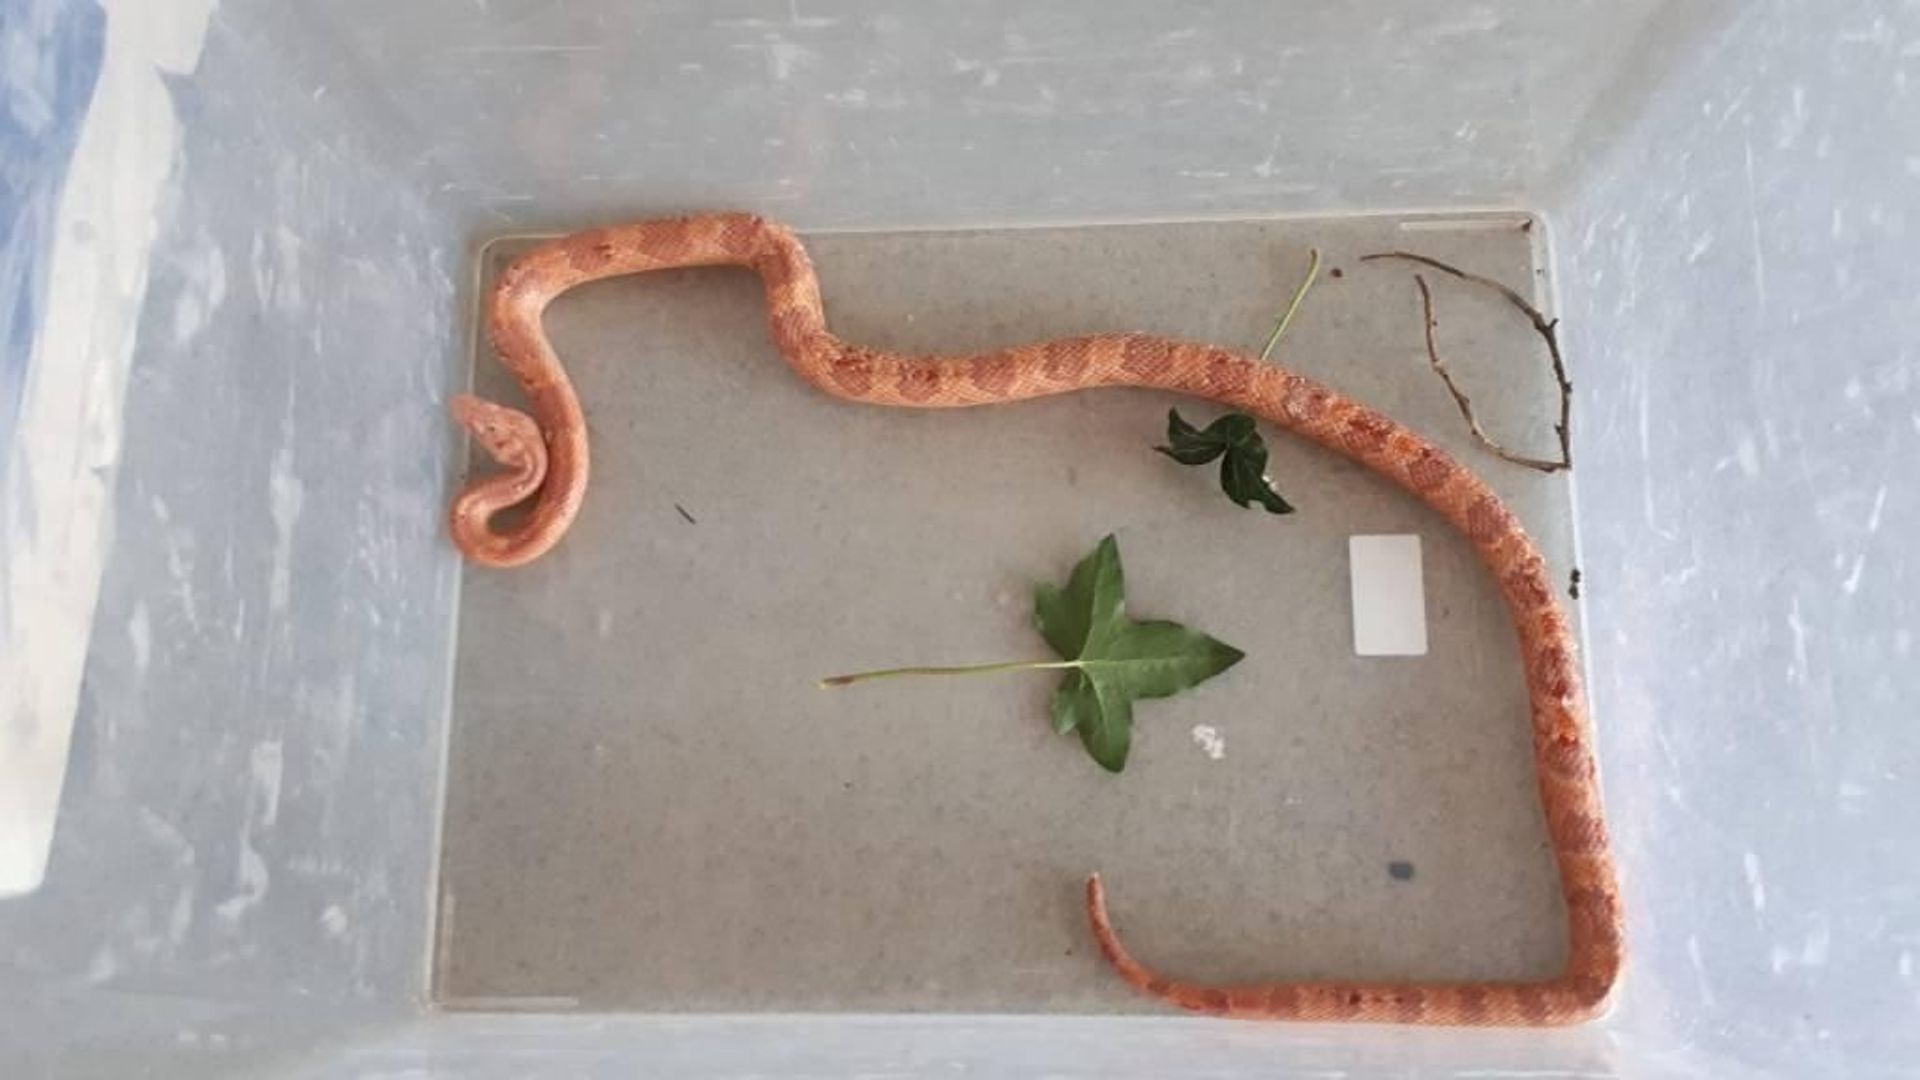 Un serpent de 2 m capturé dans un arbre - Le Parisien